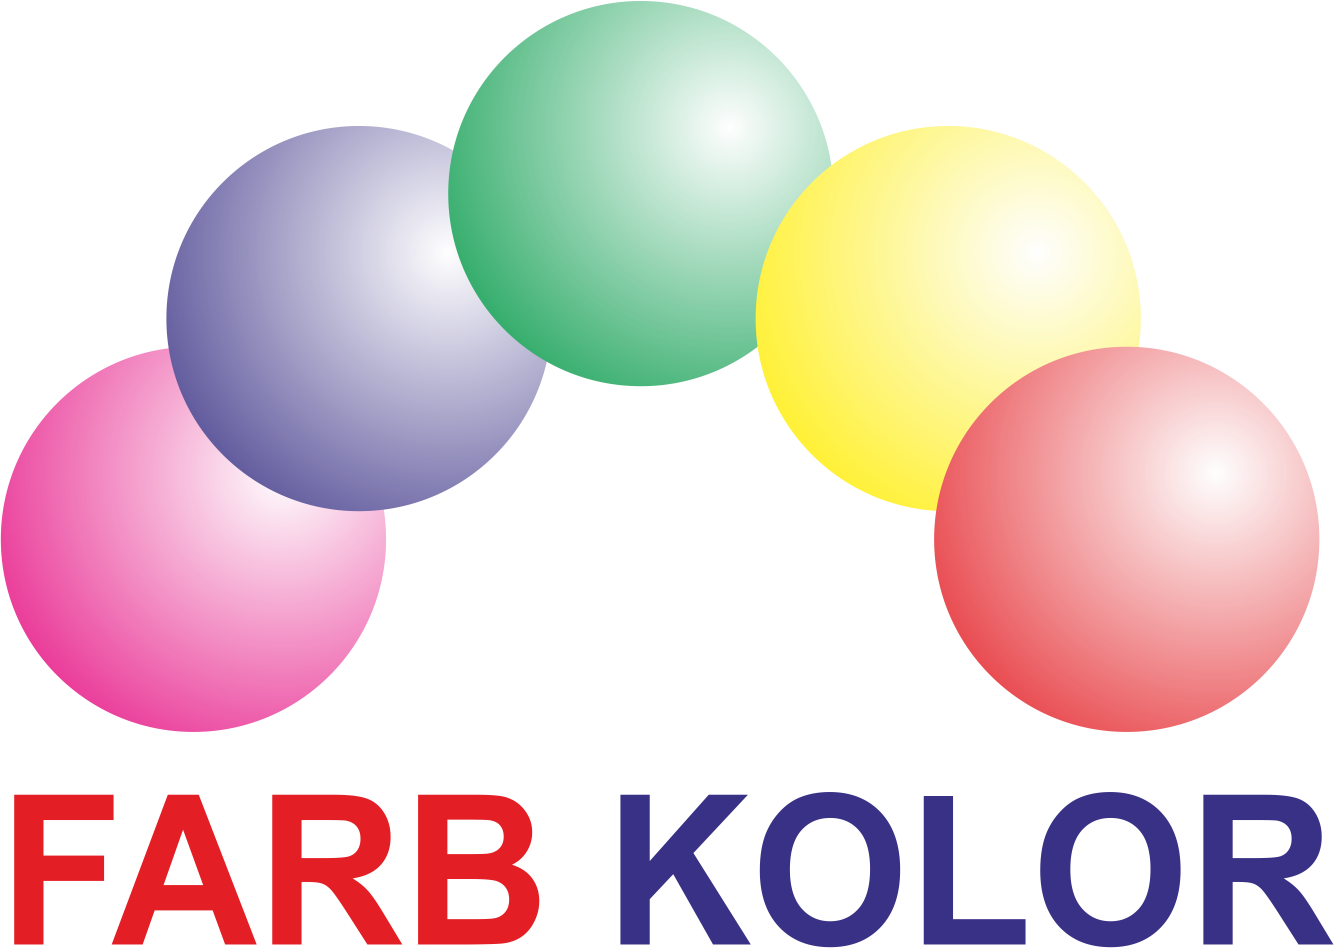 Farbkolor logo